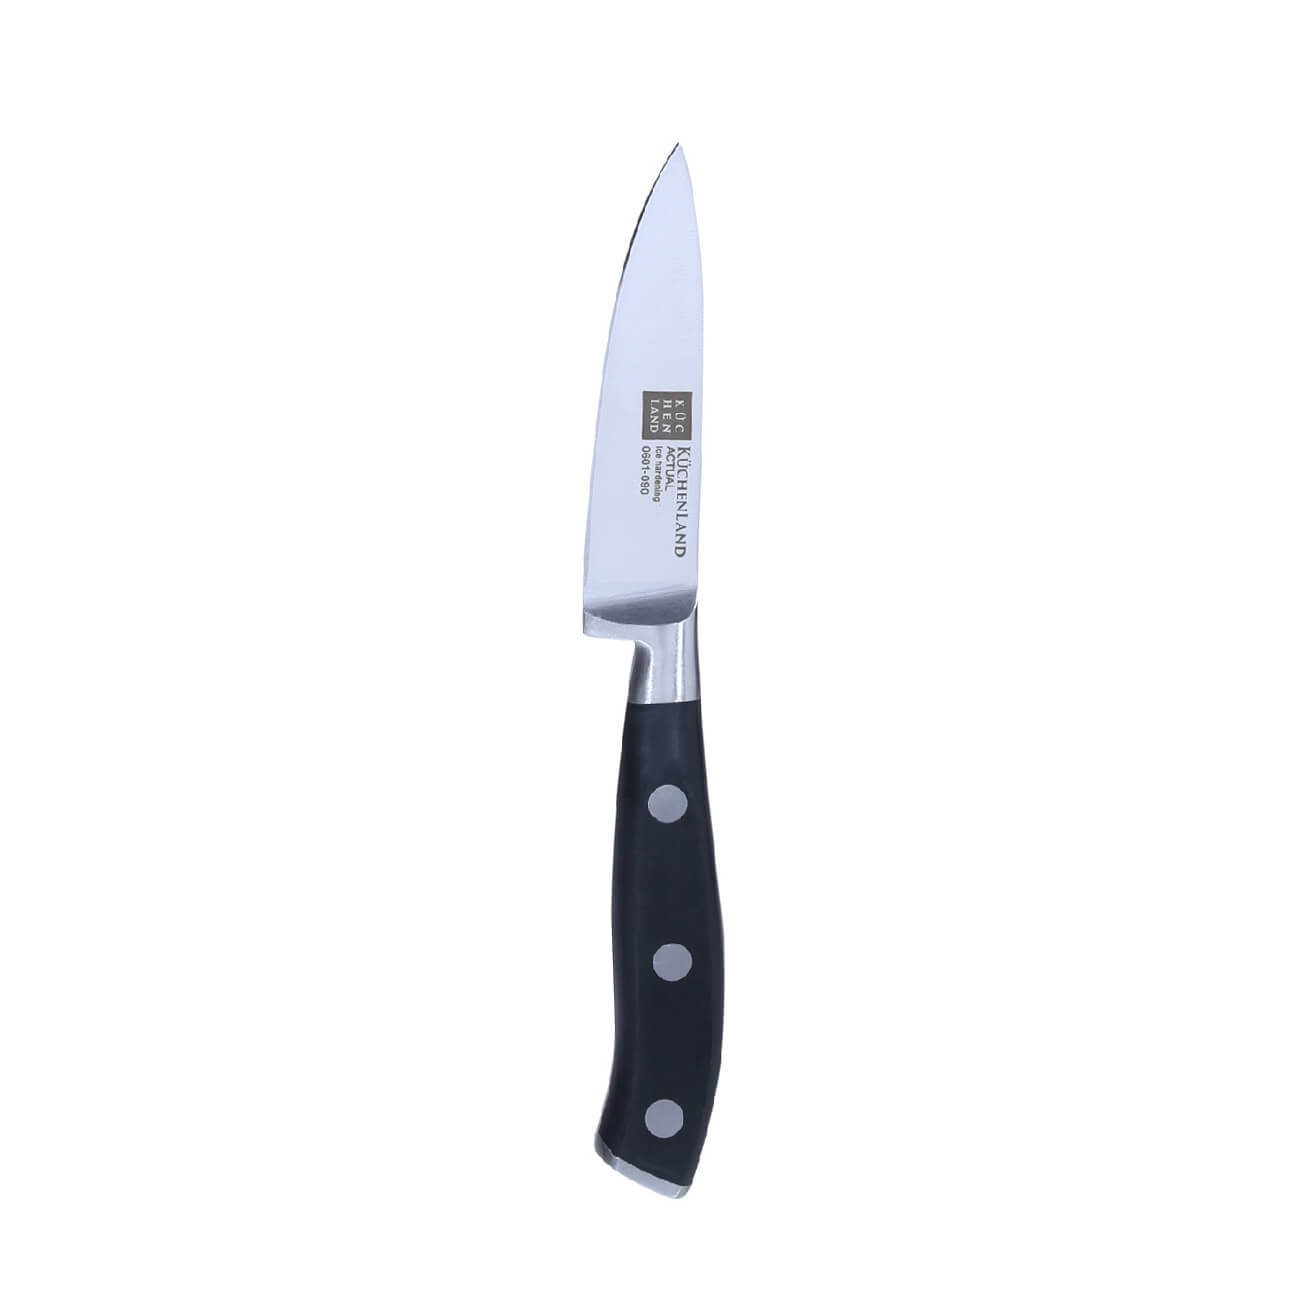 Нож для чистки овощей, 9 см, сталь/пластик, Actual нож для чистки овощей jamie oliver 9 cм k2671144